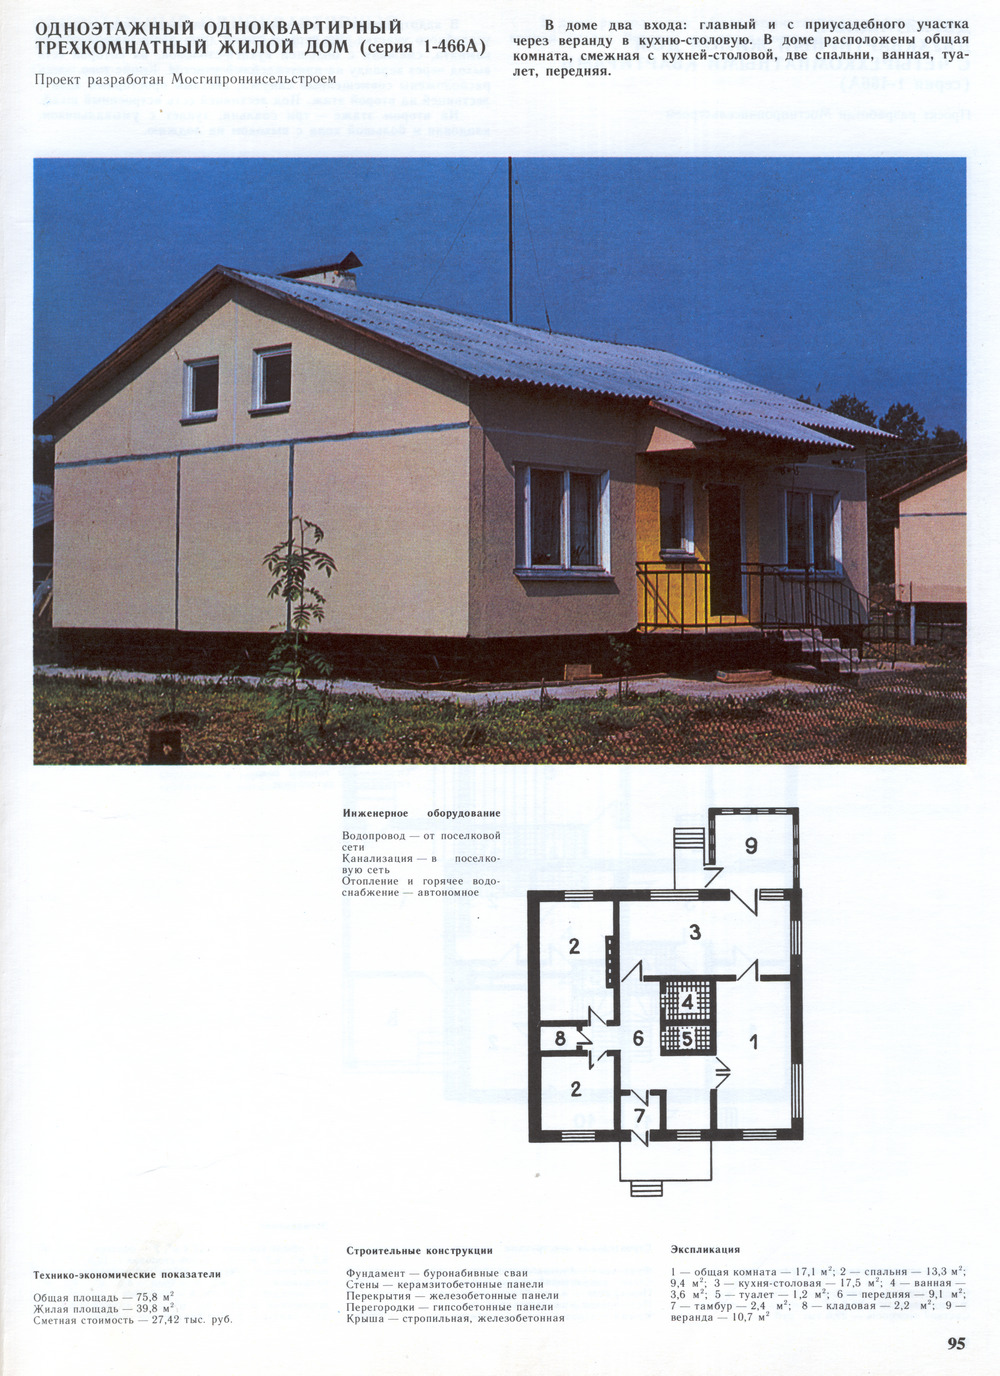 1-466А (инд. стр.) series, project Одноэтажный одноквартирный трёхкомнатный жилой дом — Drawings and Plans